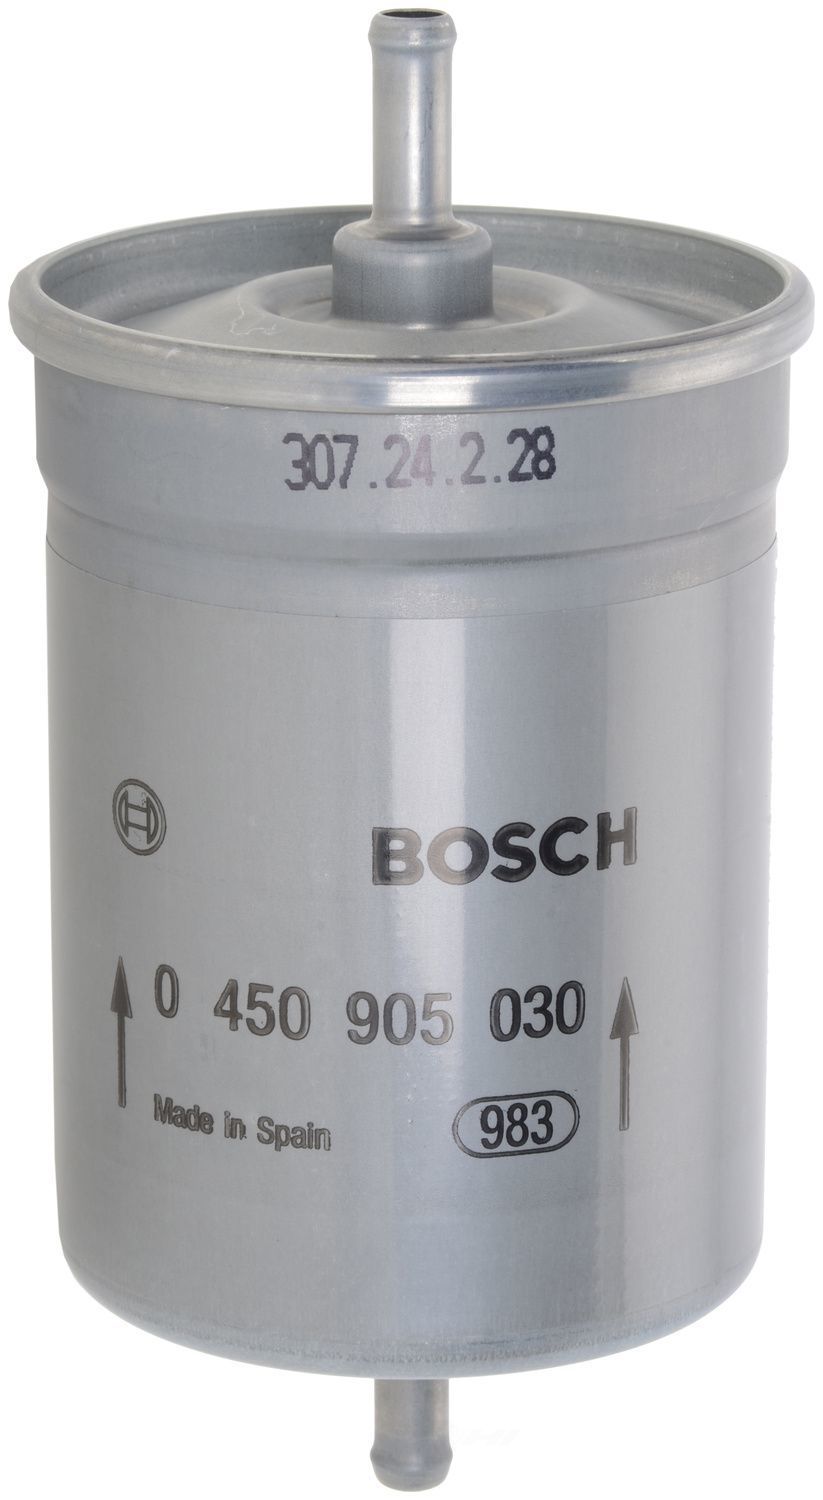 BOSCH - Gasoline Fuel Filter - BOS F5030